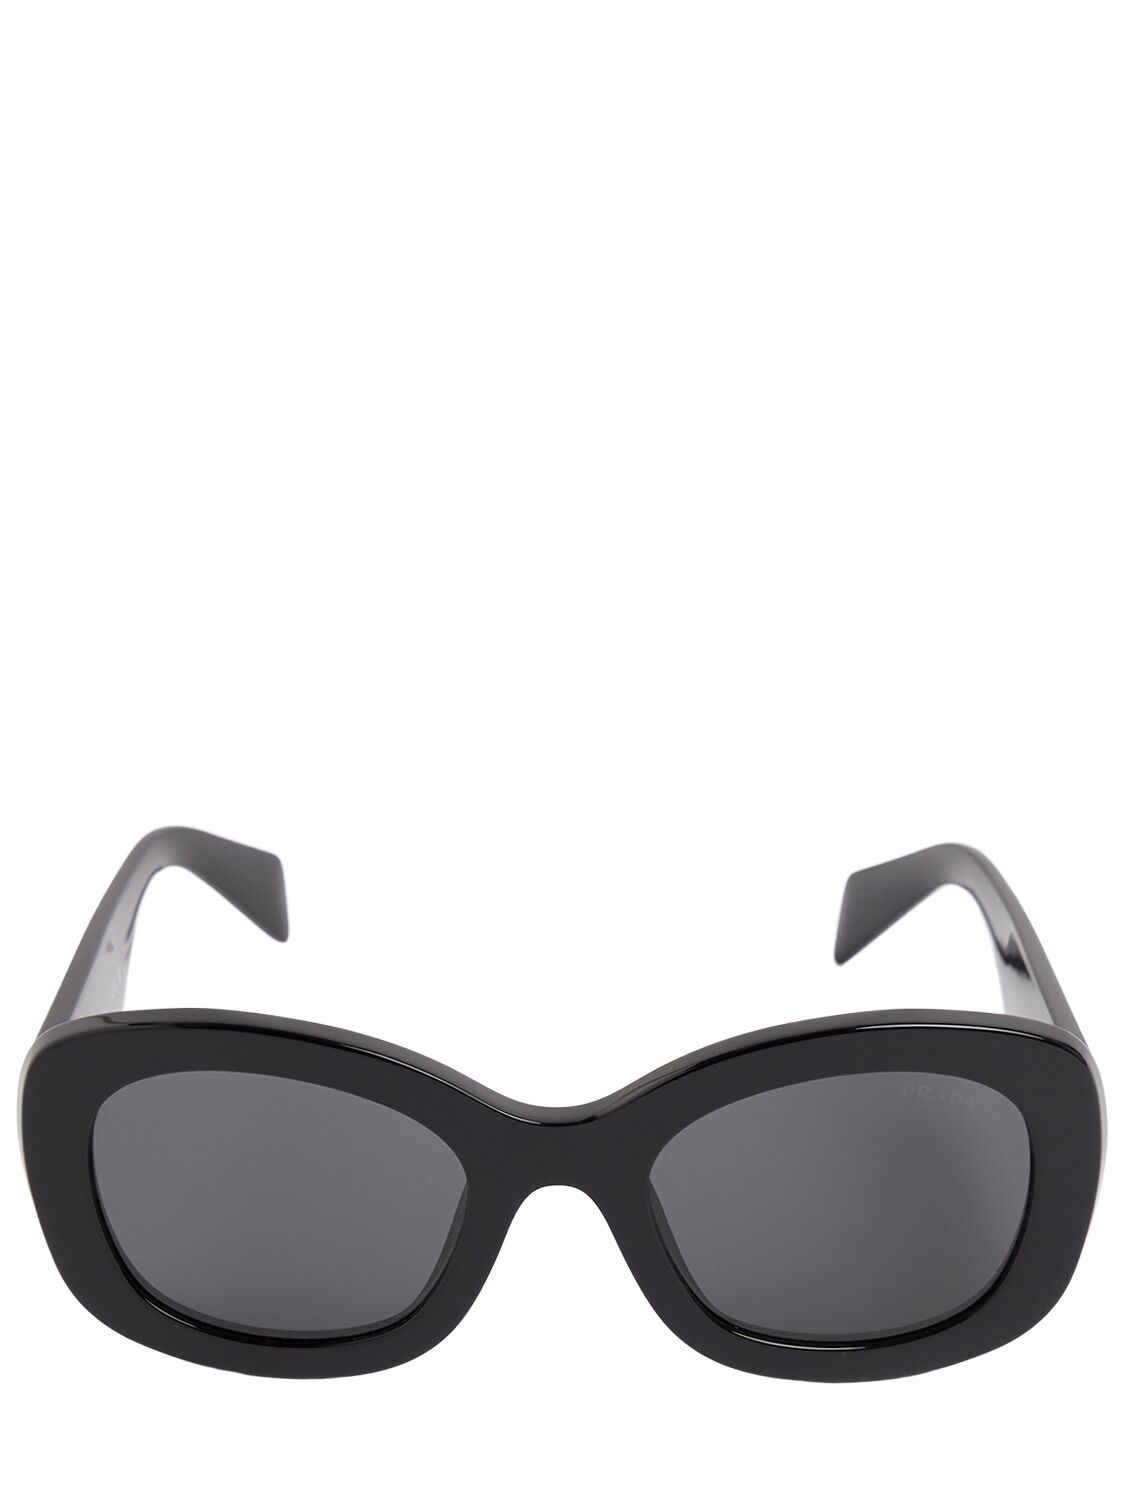 Prada Square Acetate Sunglasses In Black